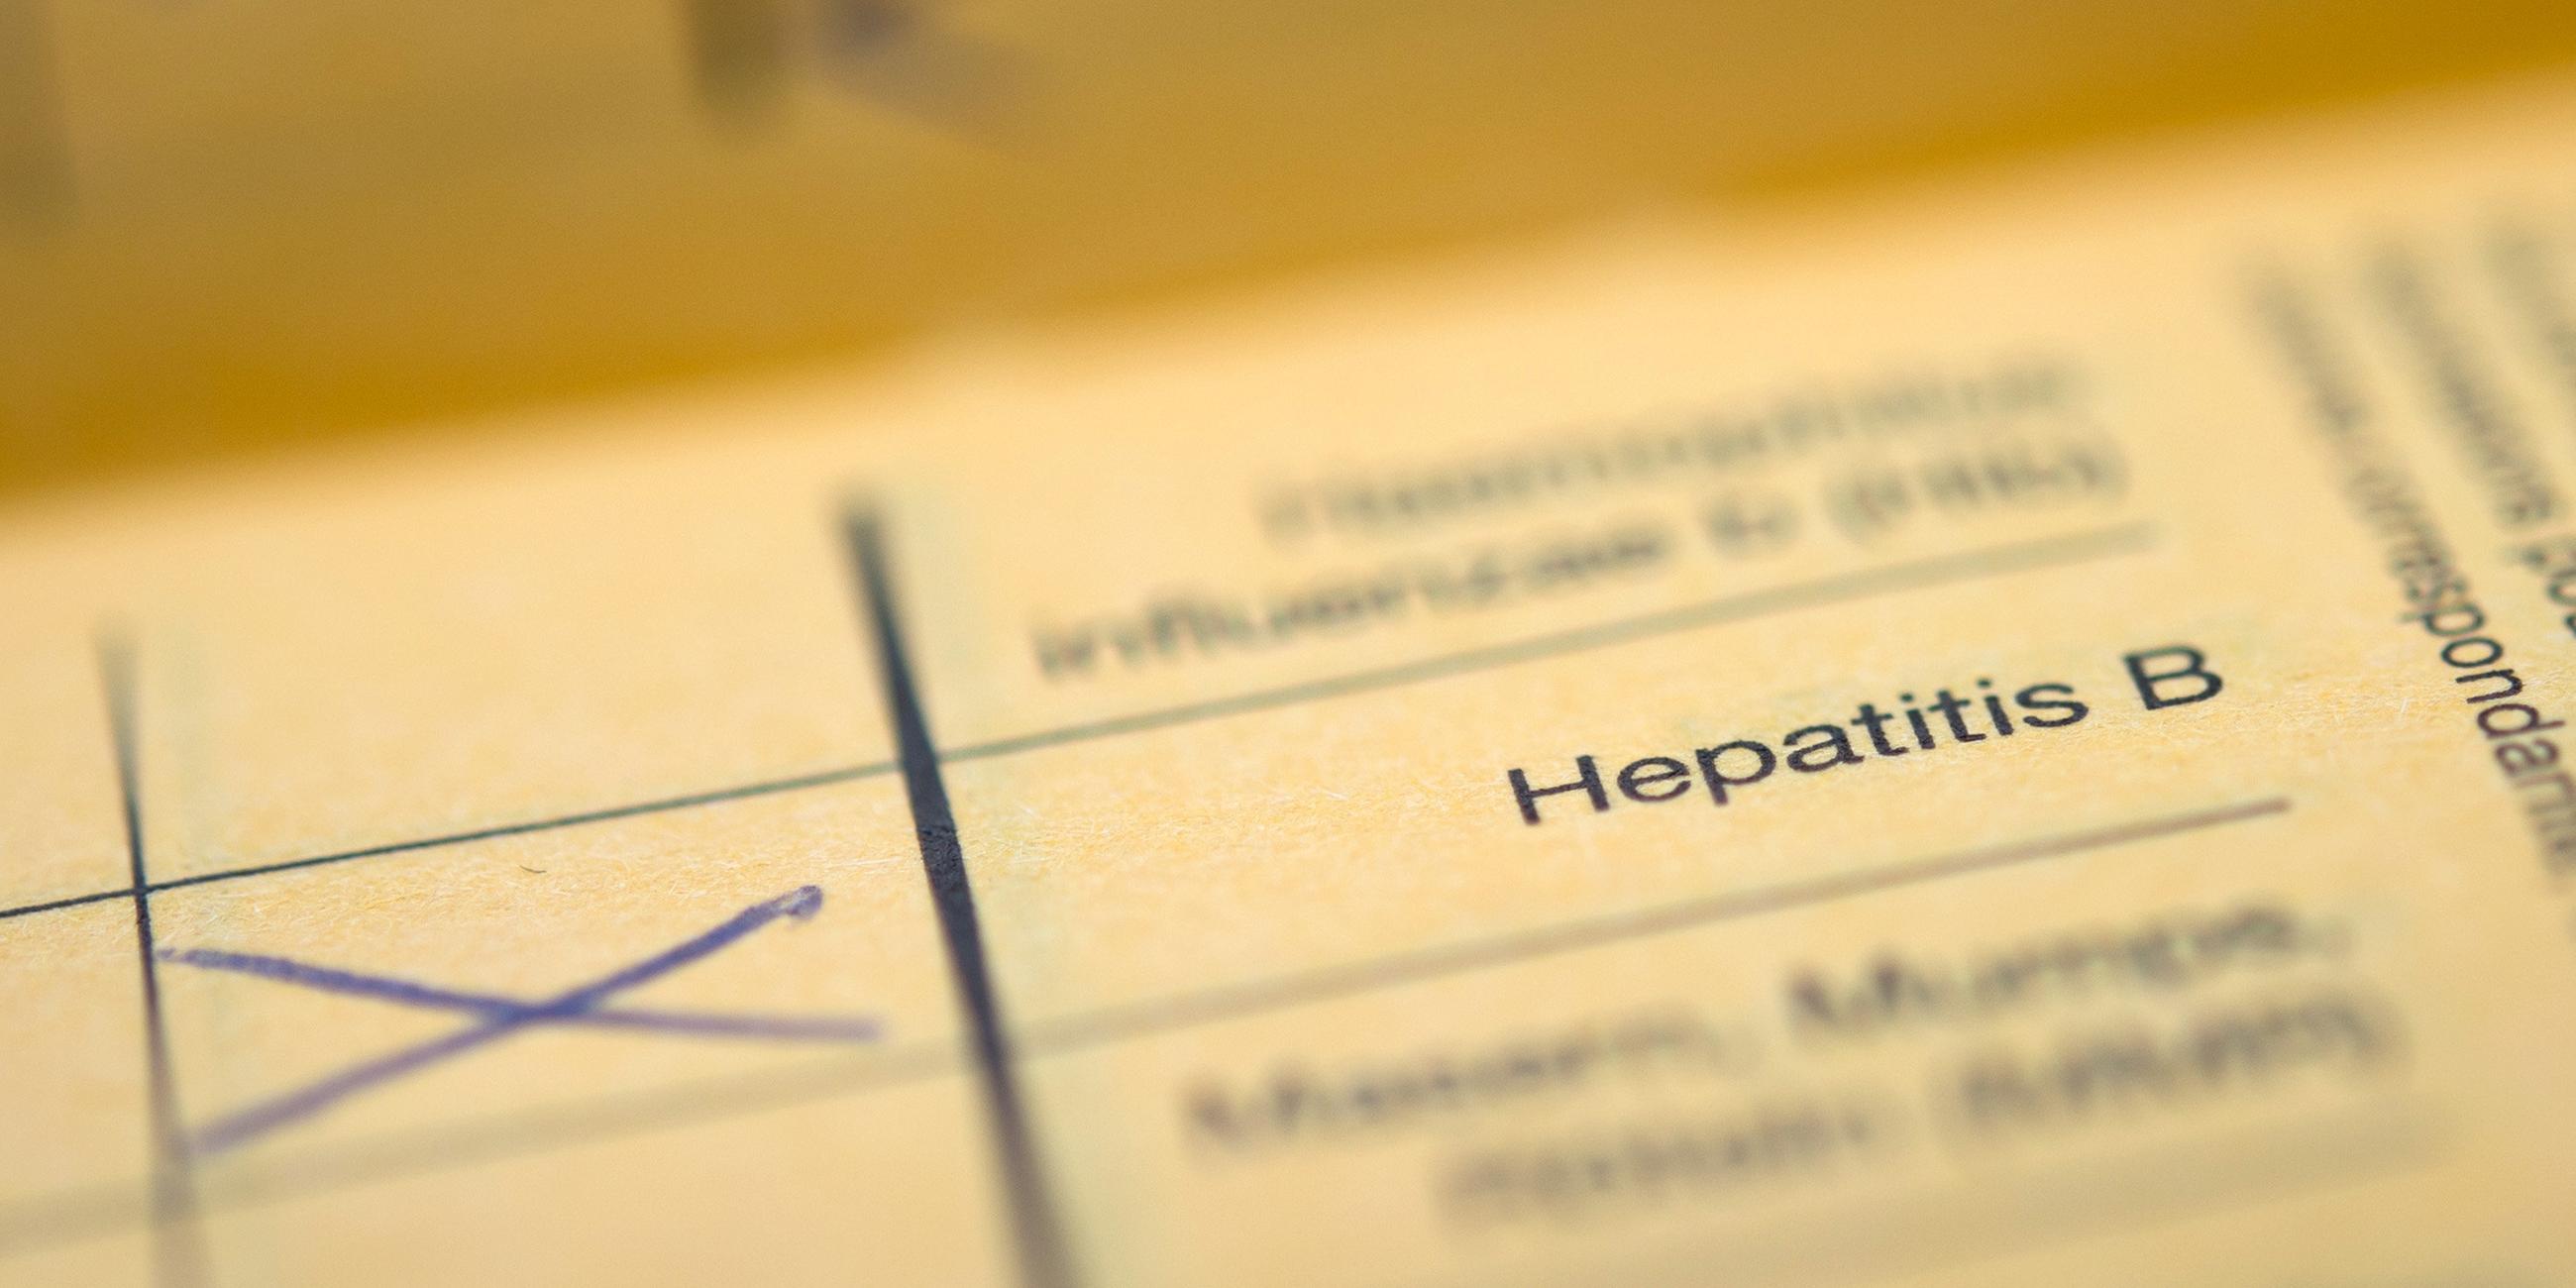 Der Schriftzug "Hepatitis B" in einem Impfpass